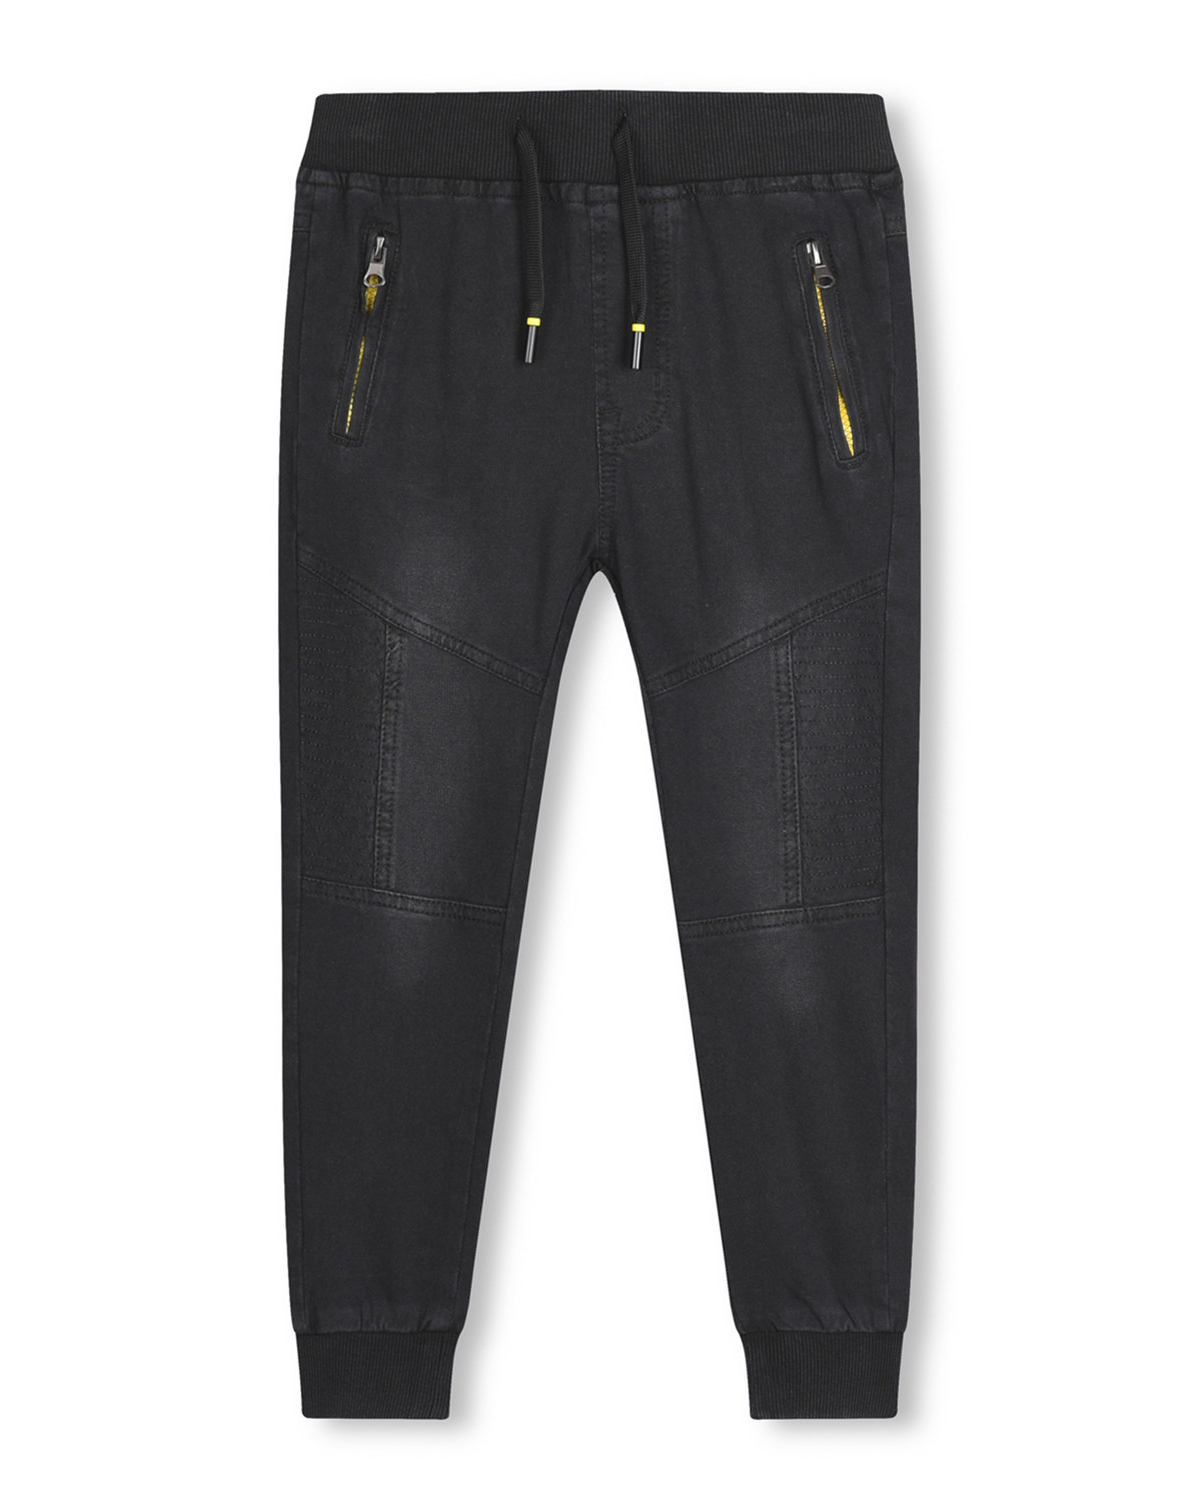 Chlapecké riflové kalhoty / tepláky - KUGO CK0906, černá / žluté zipy Barva: Černá, Velikost: 146